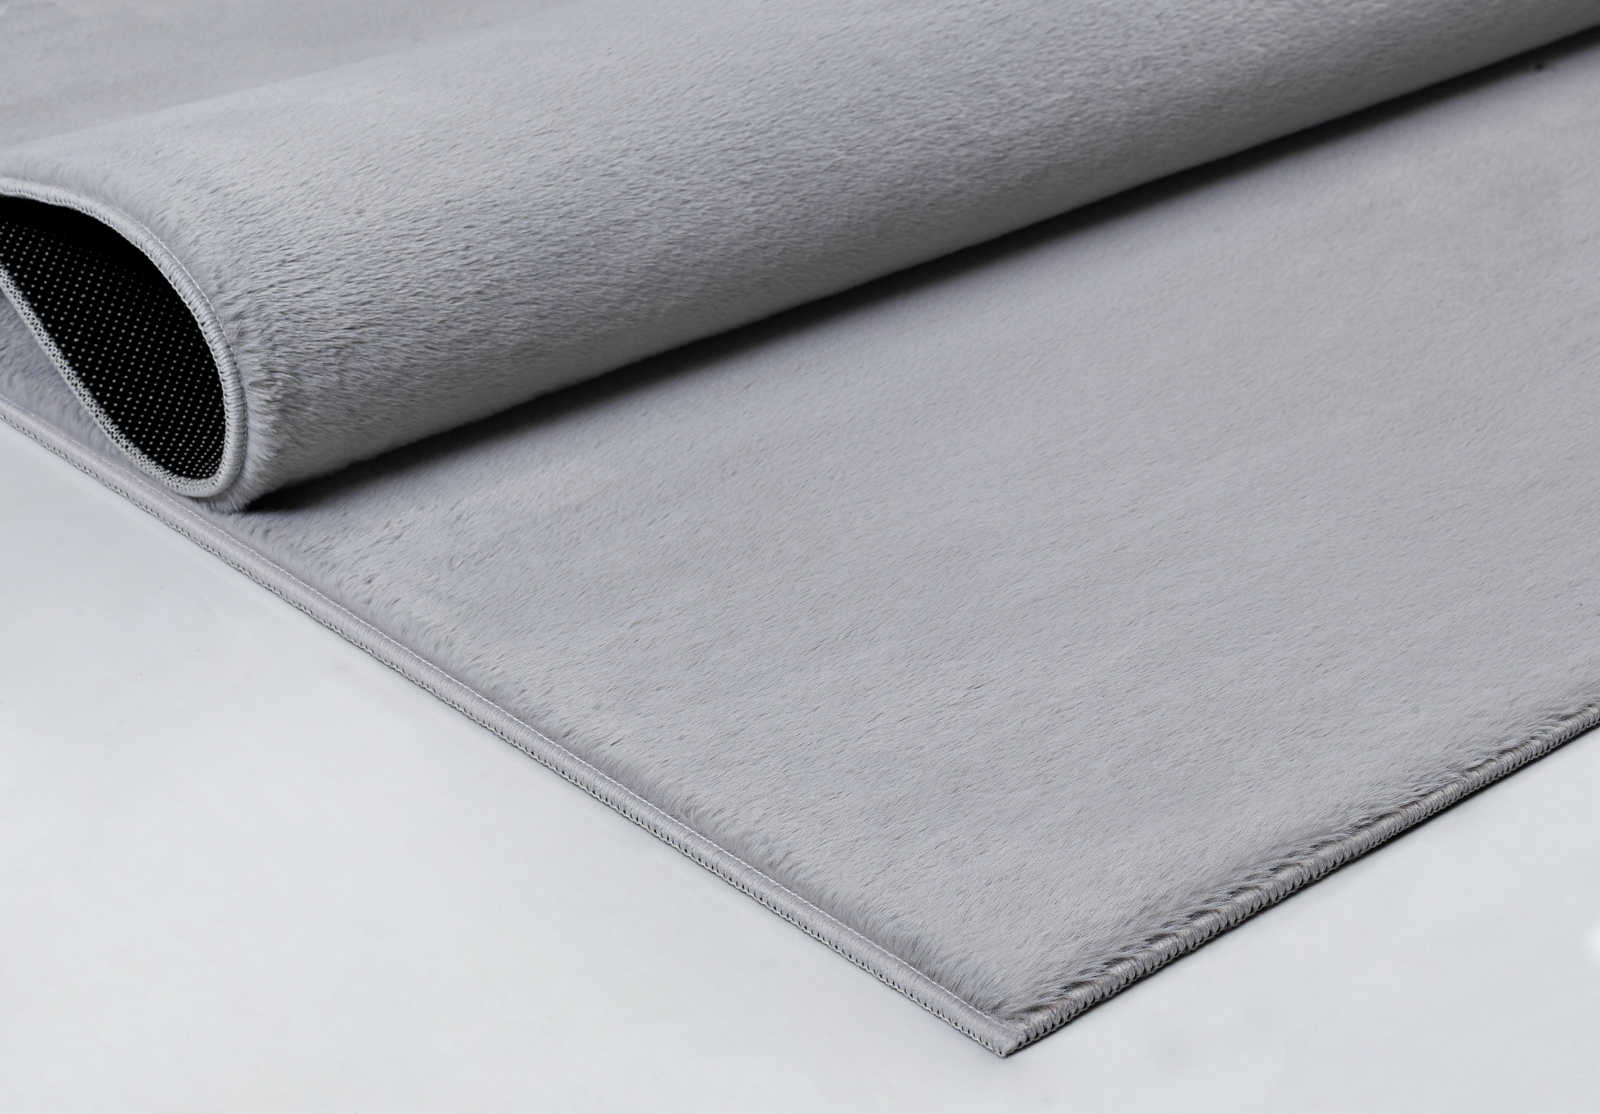             Angenehmer Hochflor Teppich in sanften Grau – 200 x 140 cm
        